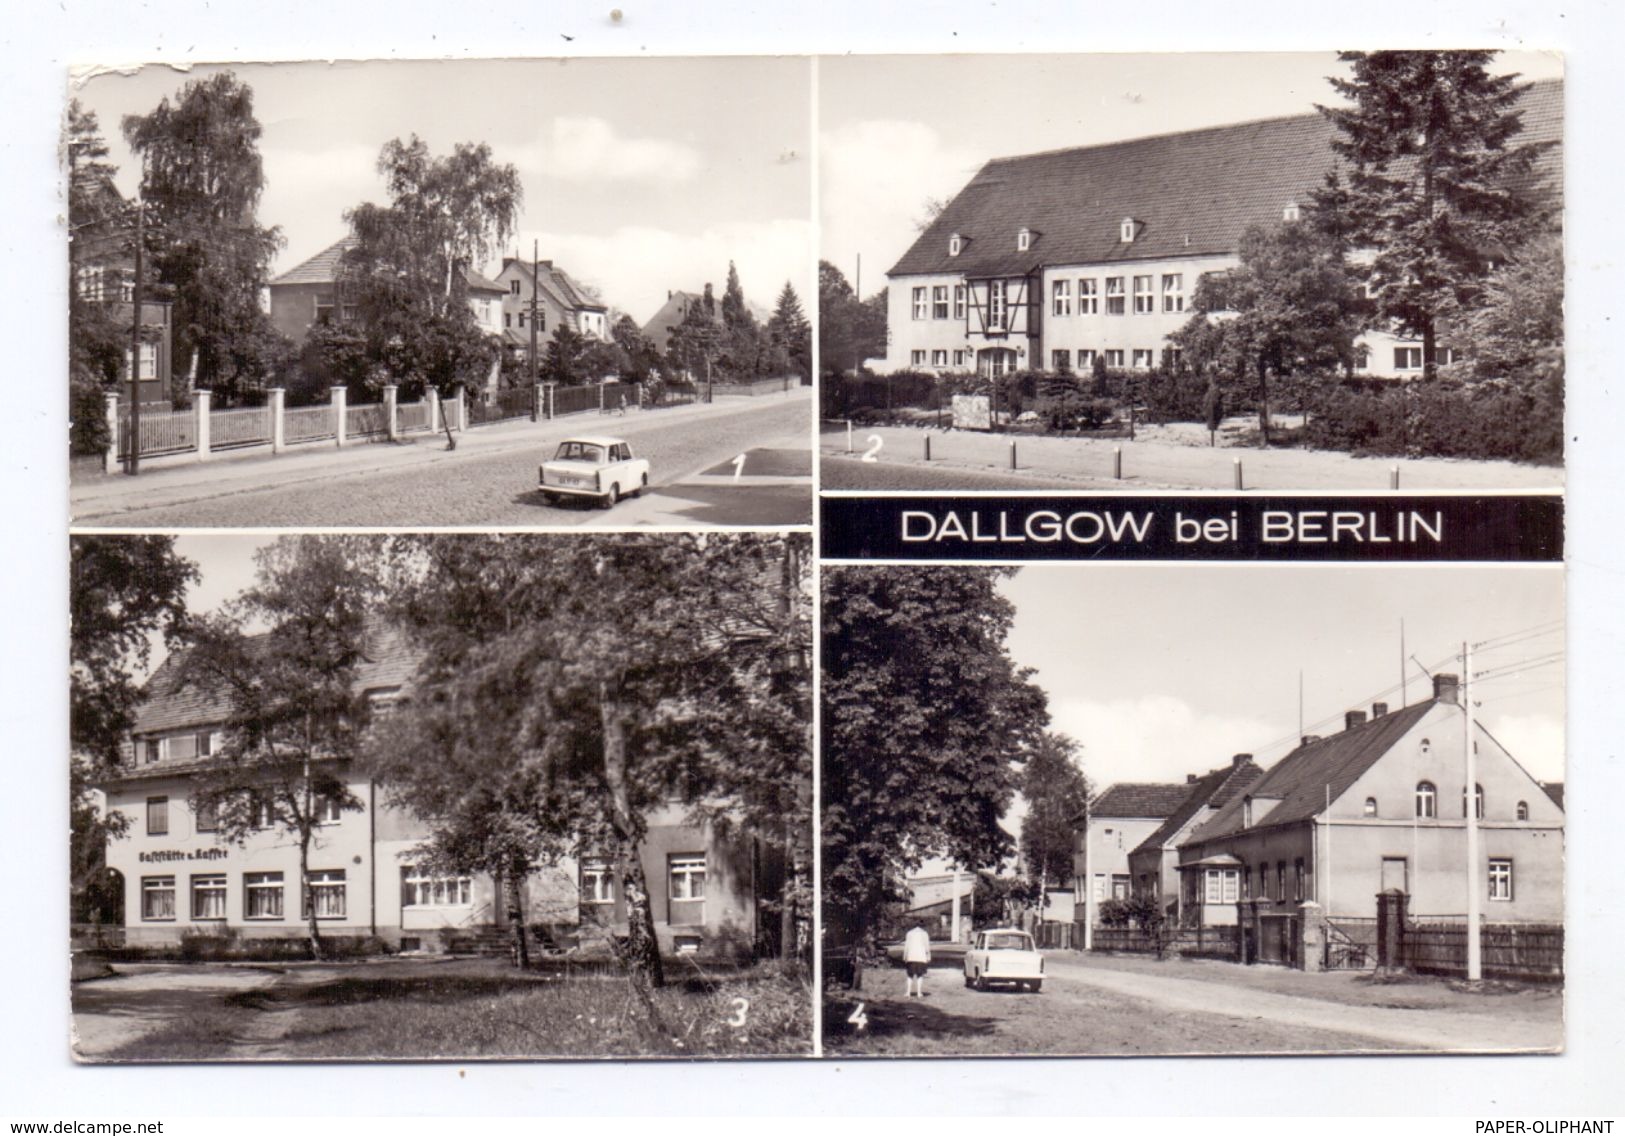 0-1543 DALLGOW, Thälmann-Strasse, Polytechn. Oberschule, Seegefelder Strasse, Märkischer Platz - Dallgow-Döberitz